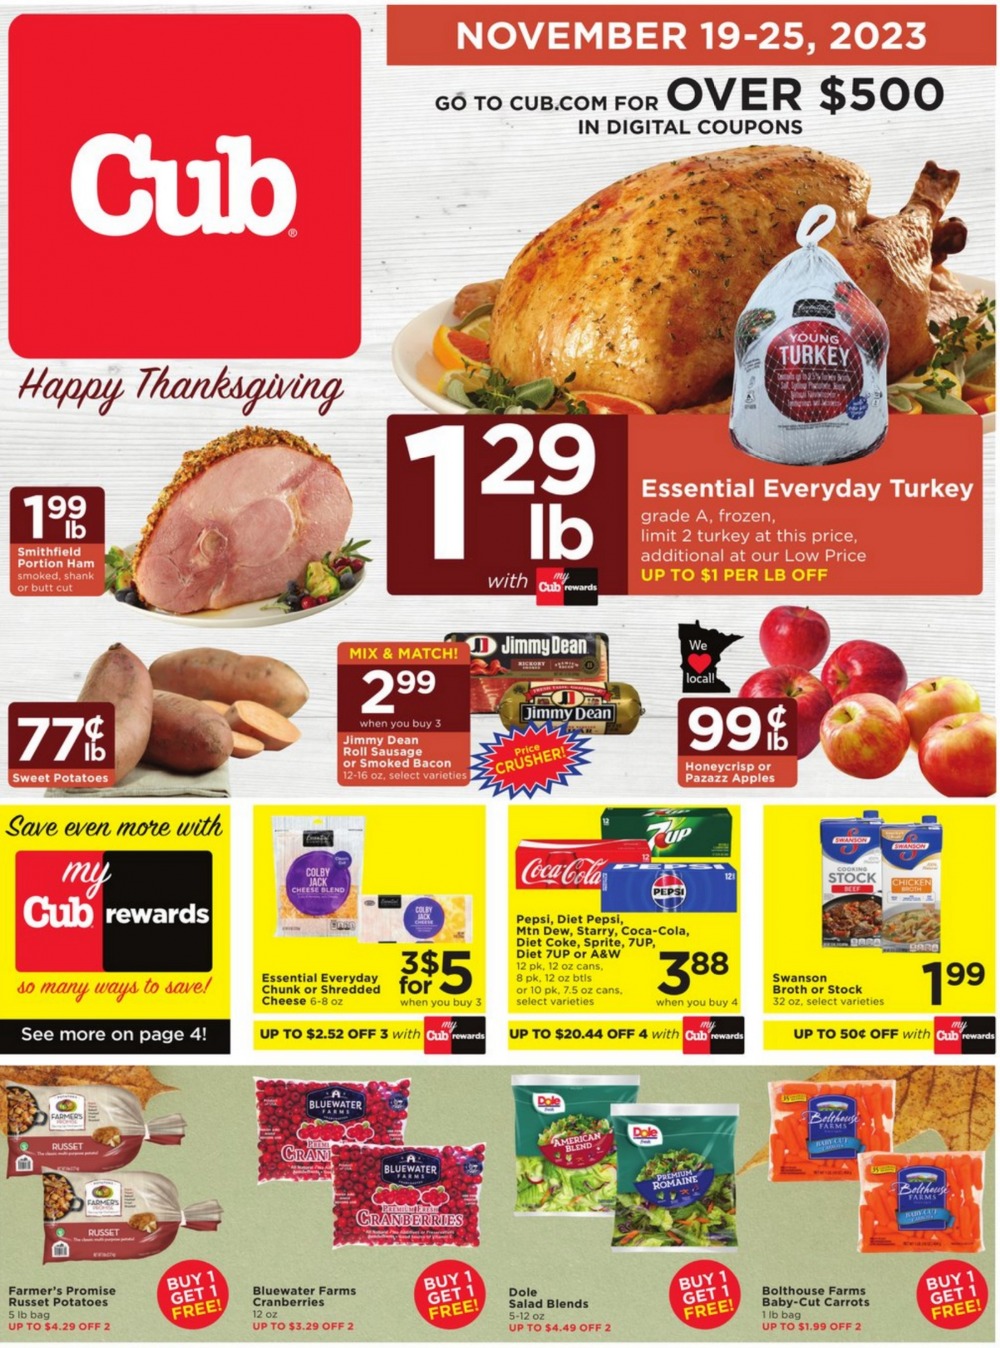 Cub Foods Black Friday Deals 2023 1 – cub foods ad 1 1